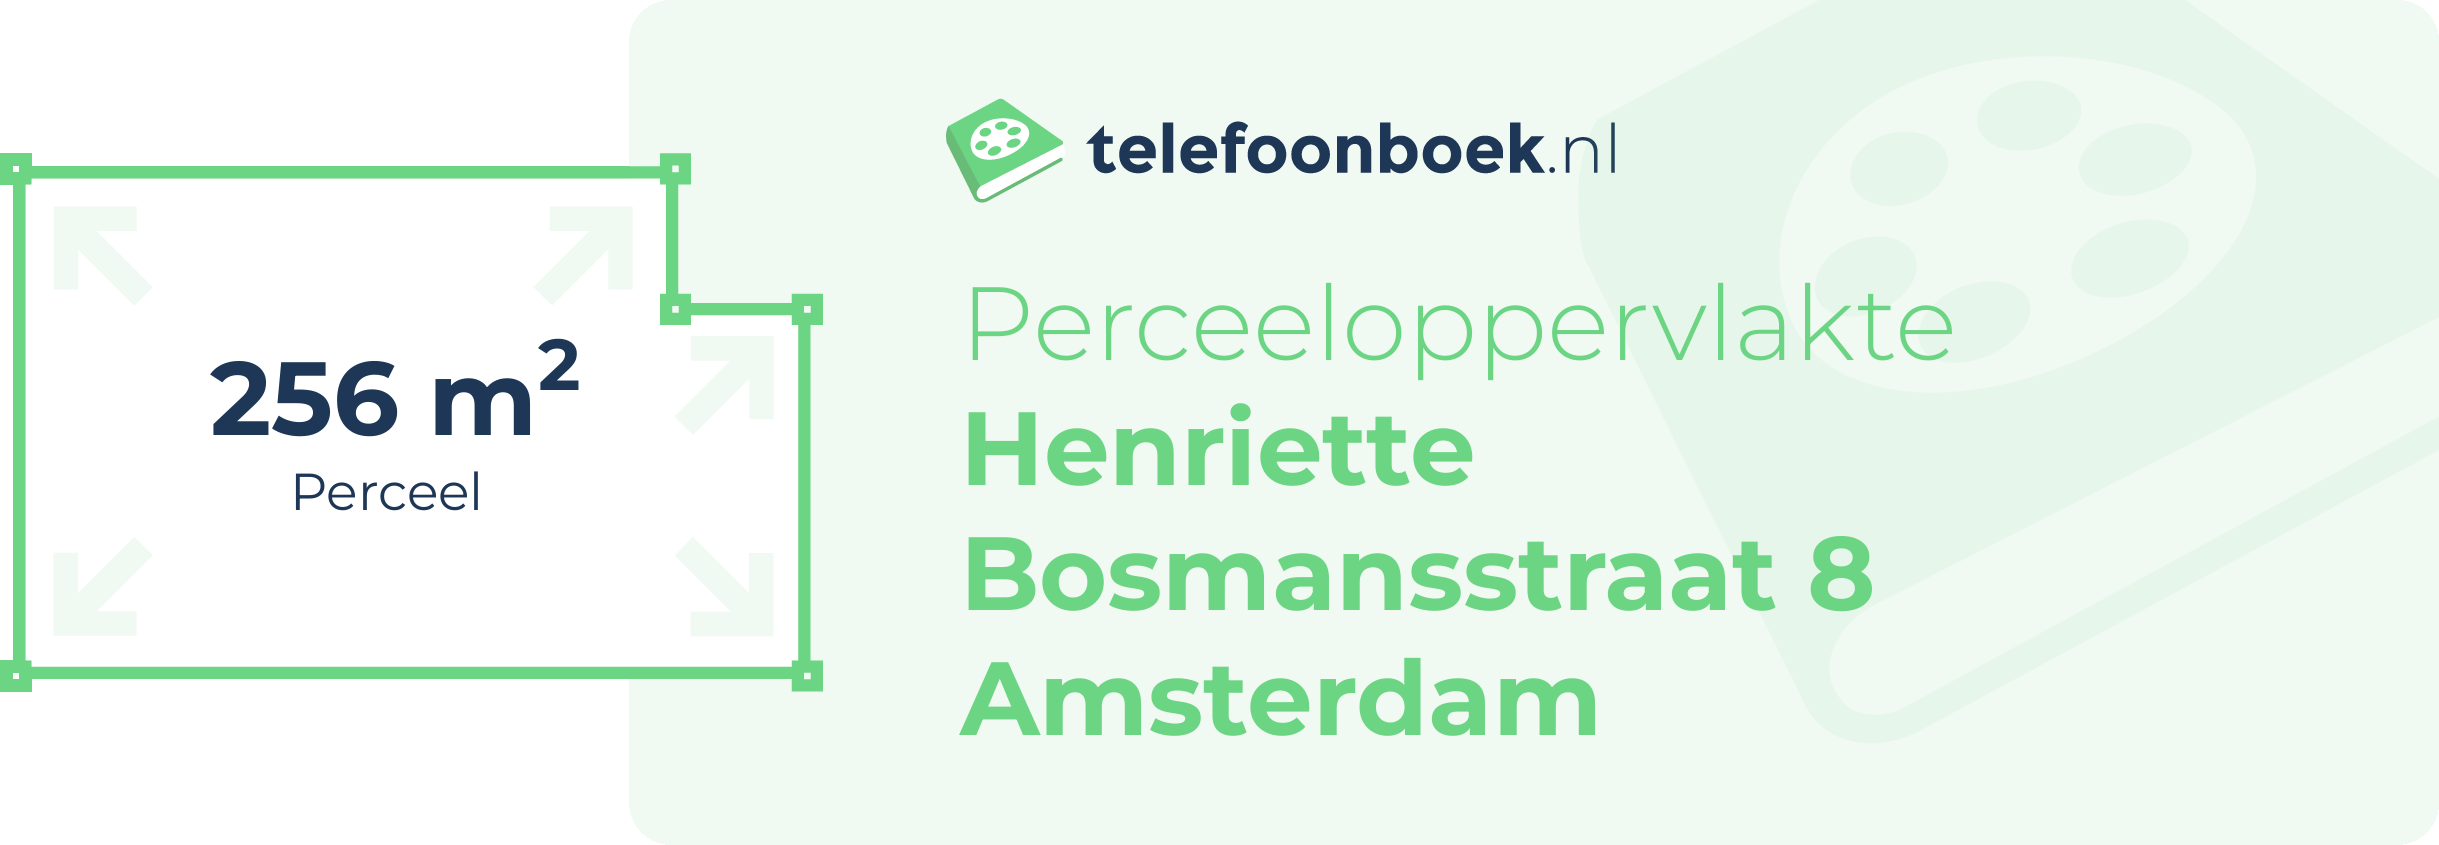 Perceeloppervlakte Henriette Bosmansstraat 8 Amsterdam